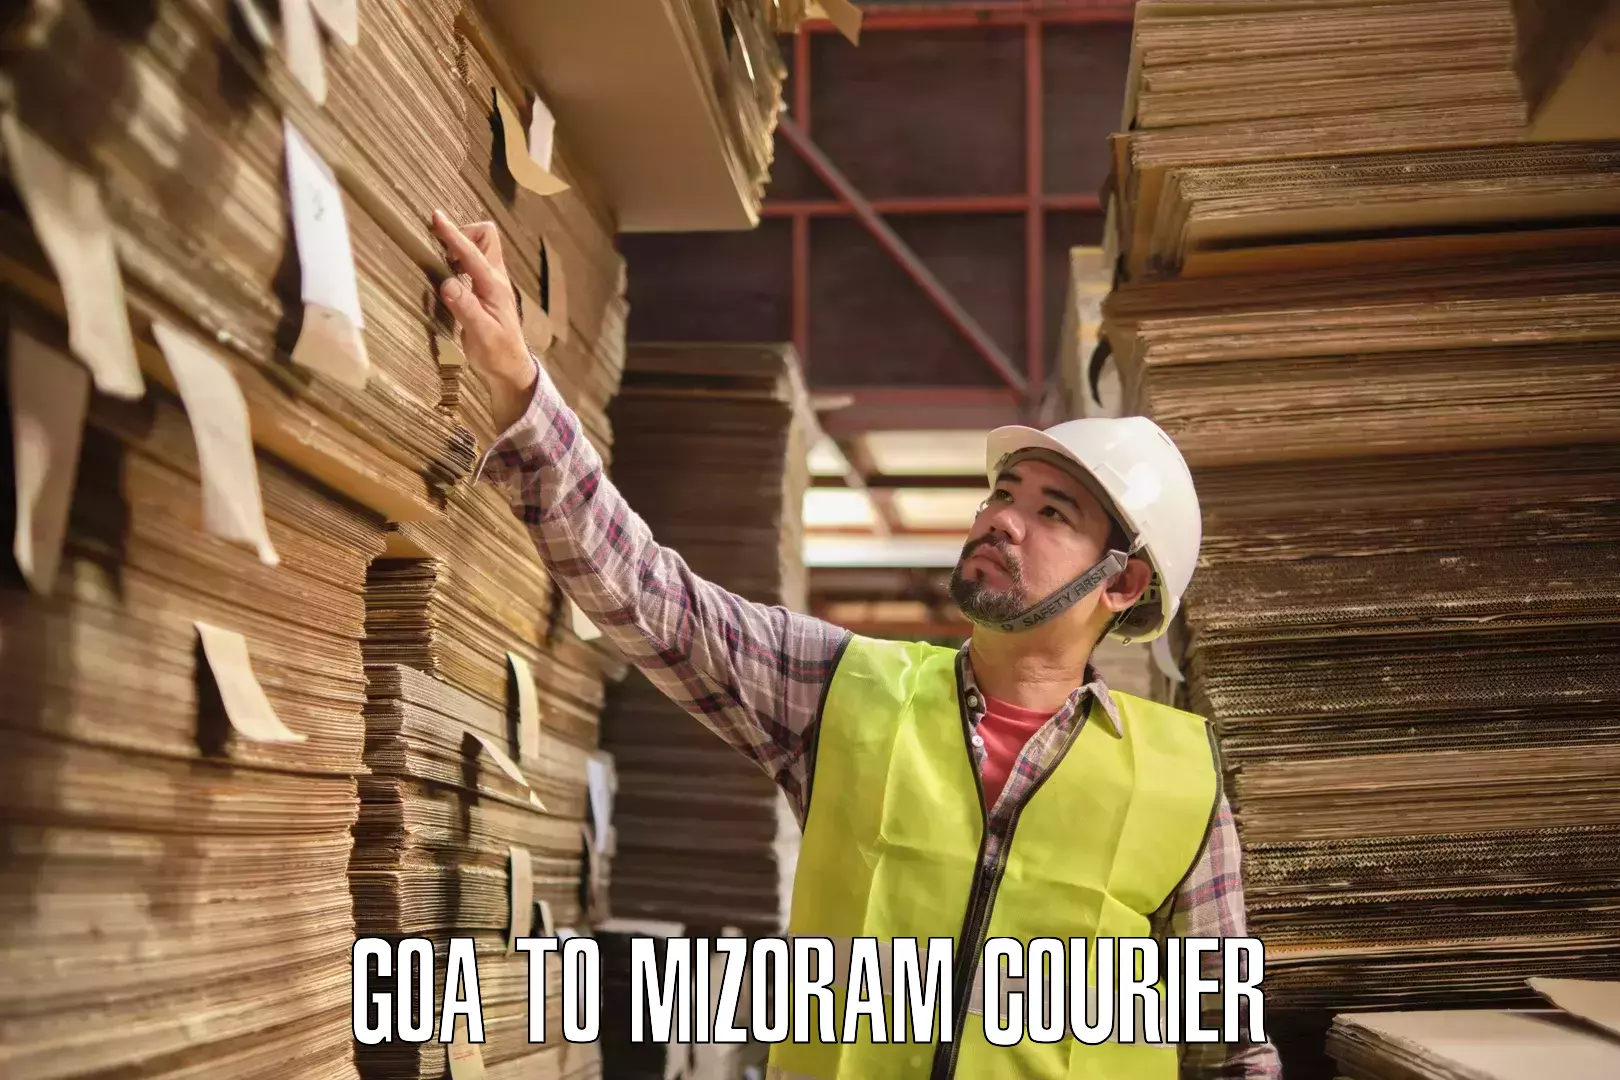 Courier service comparison Goa to Saitual